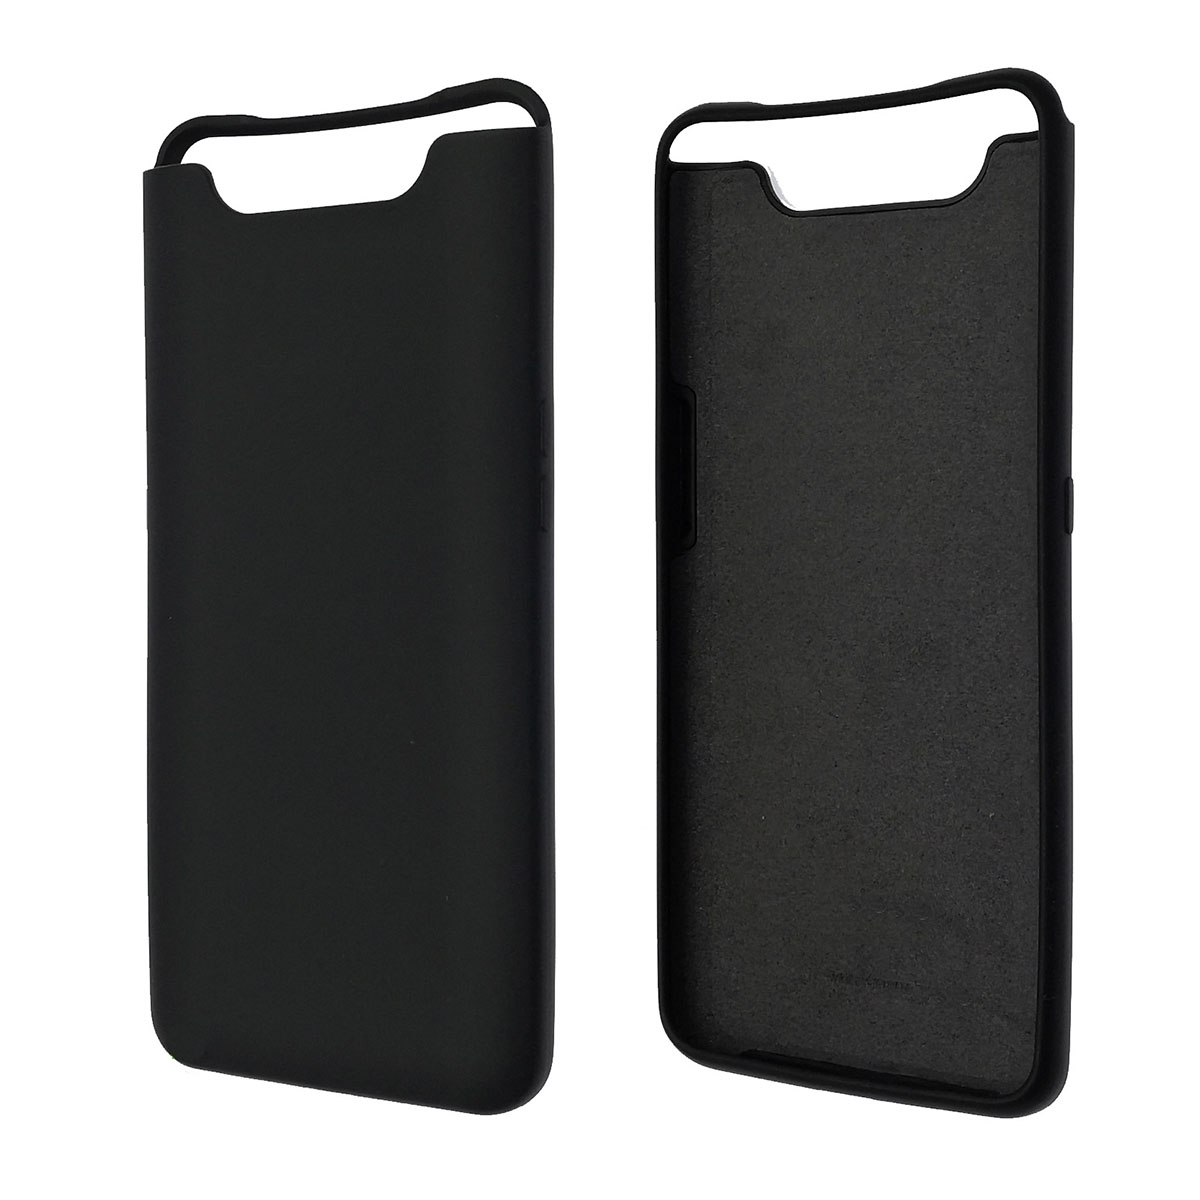 Чехол накладка Silicon Cover для Samsung A80 (SM-A805), силикон, бархат, цвет черный.